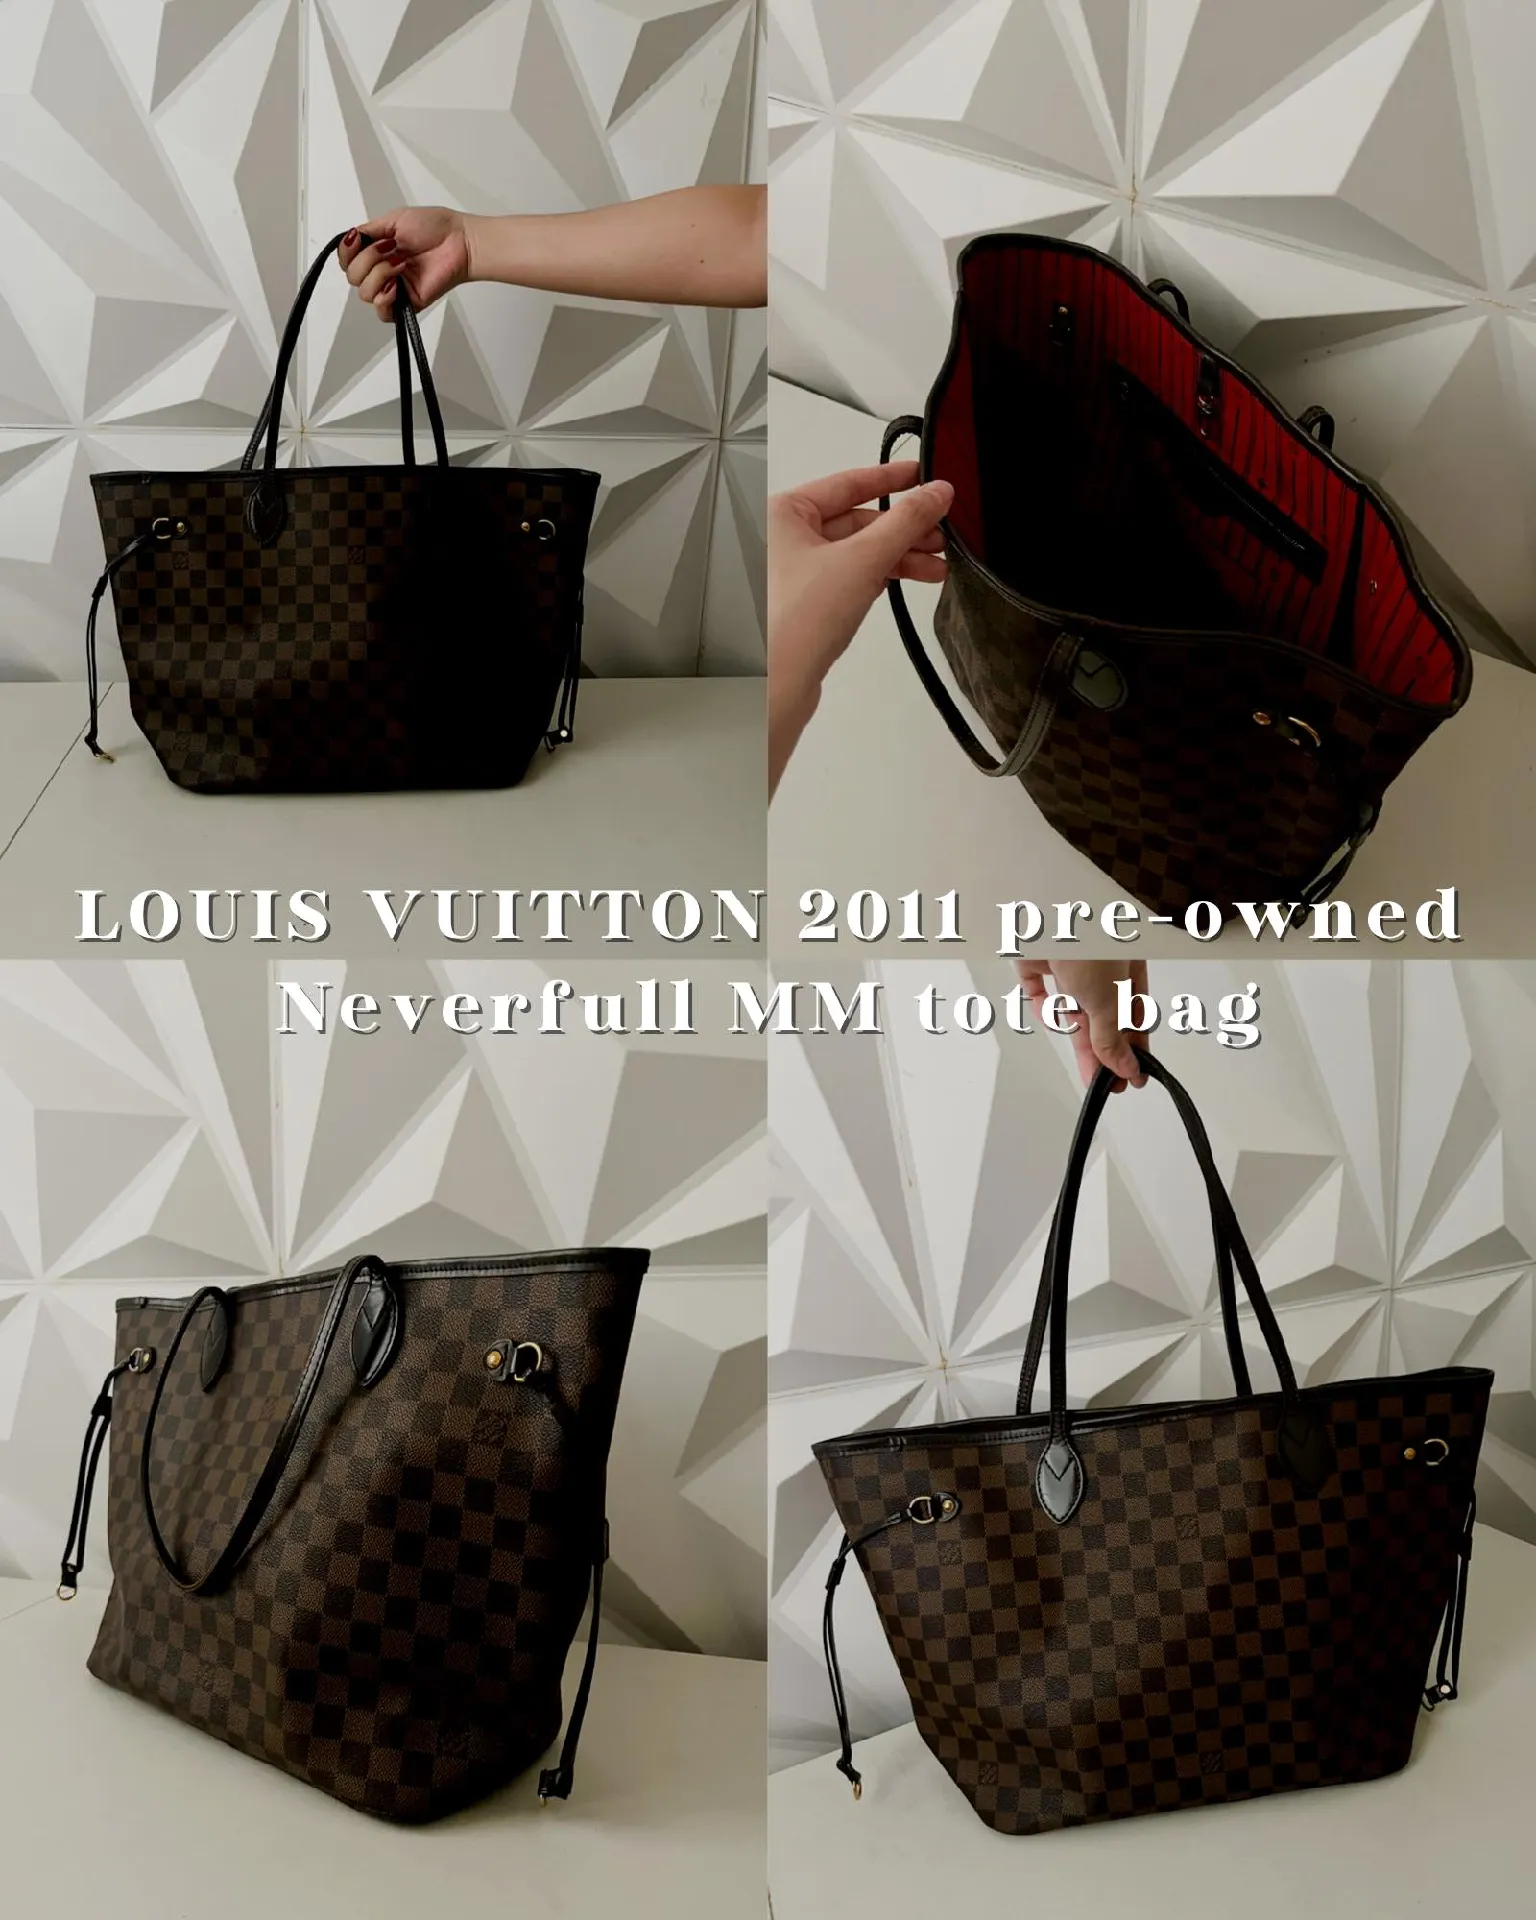 Louis Vuitton Luggage & Travel Bags for Men - Poshmark